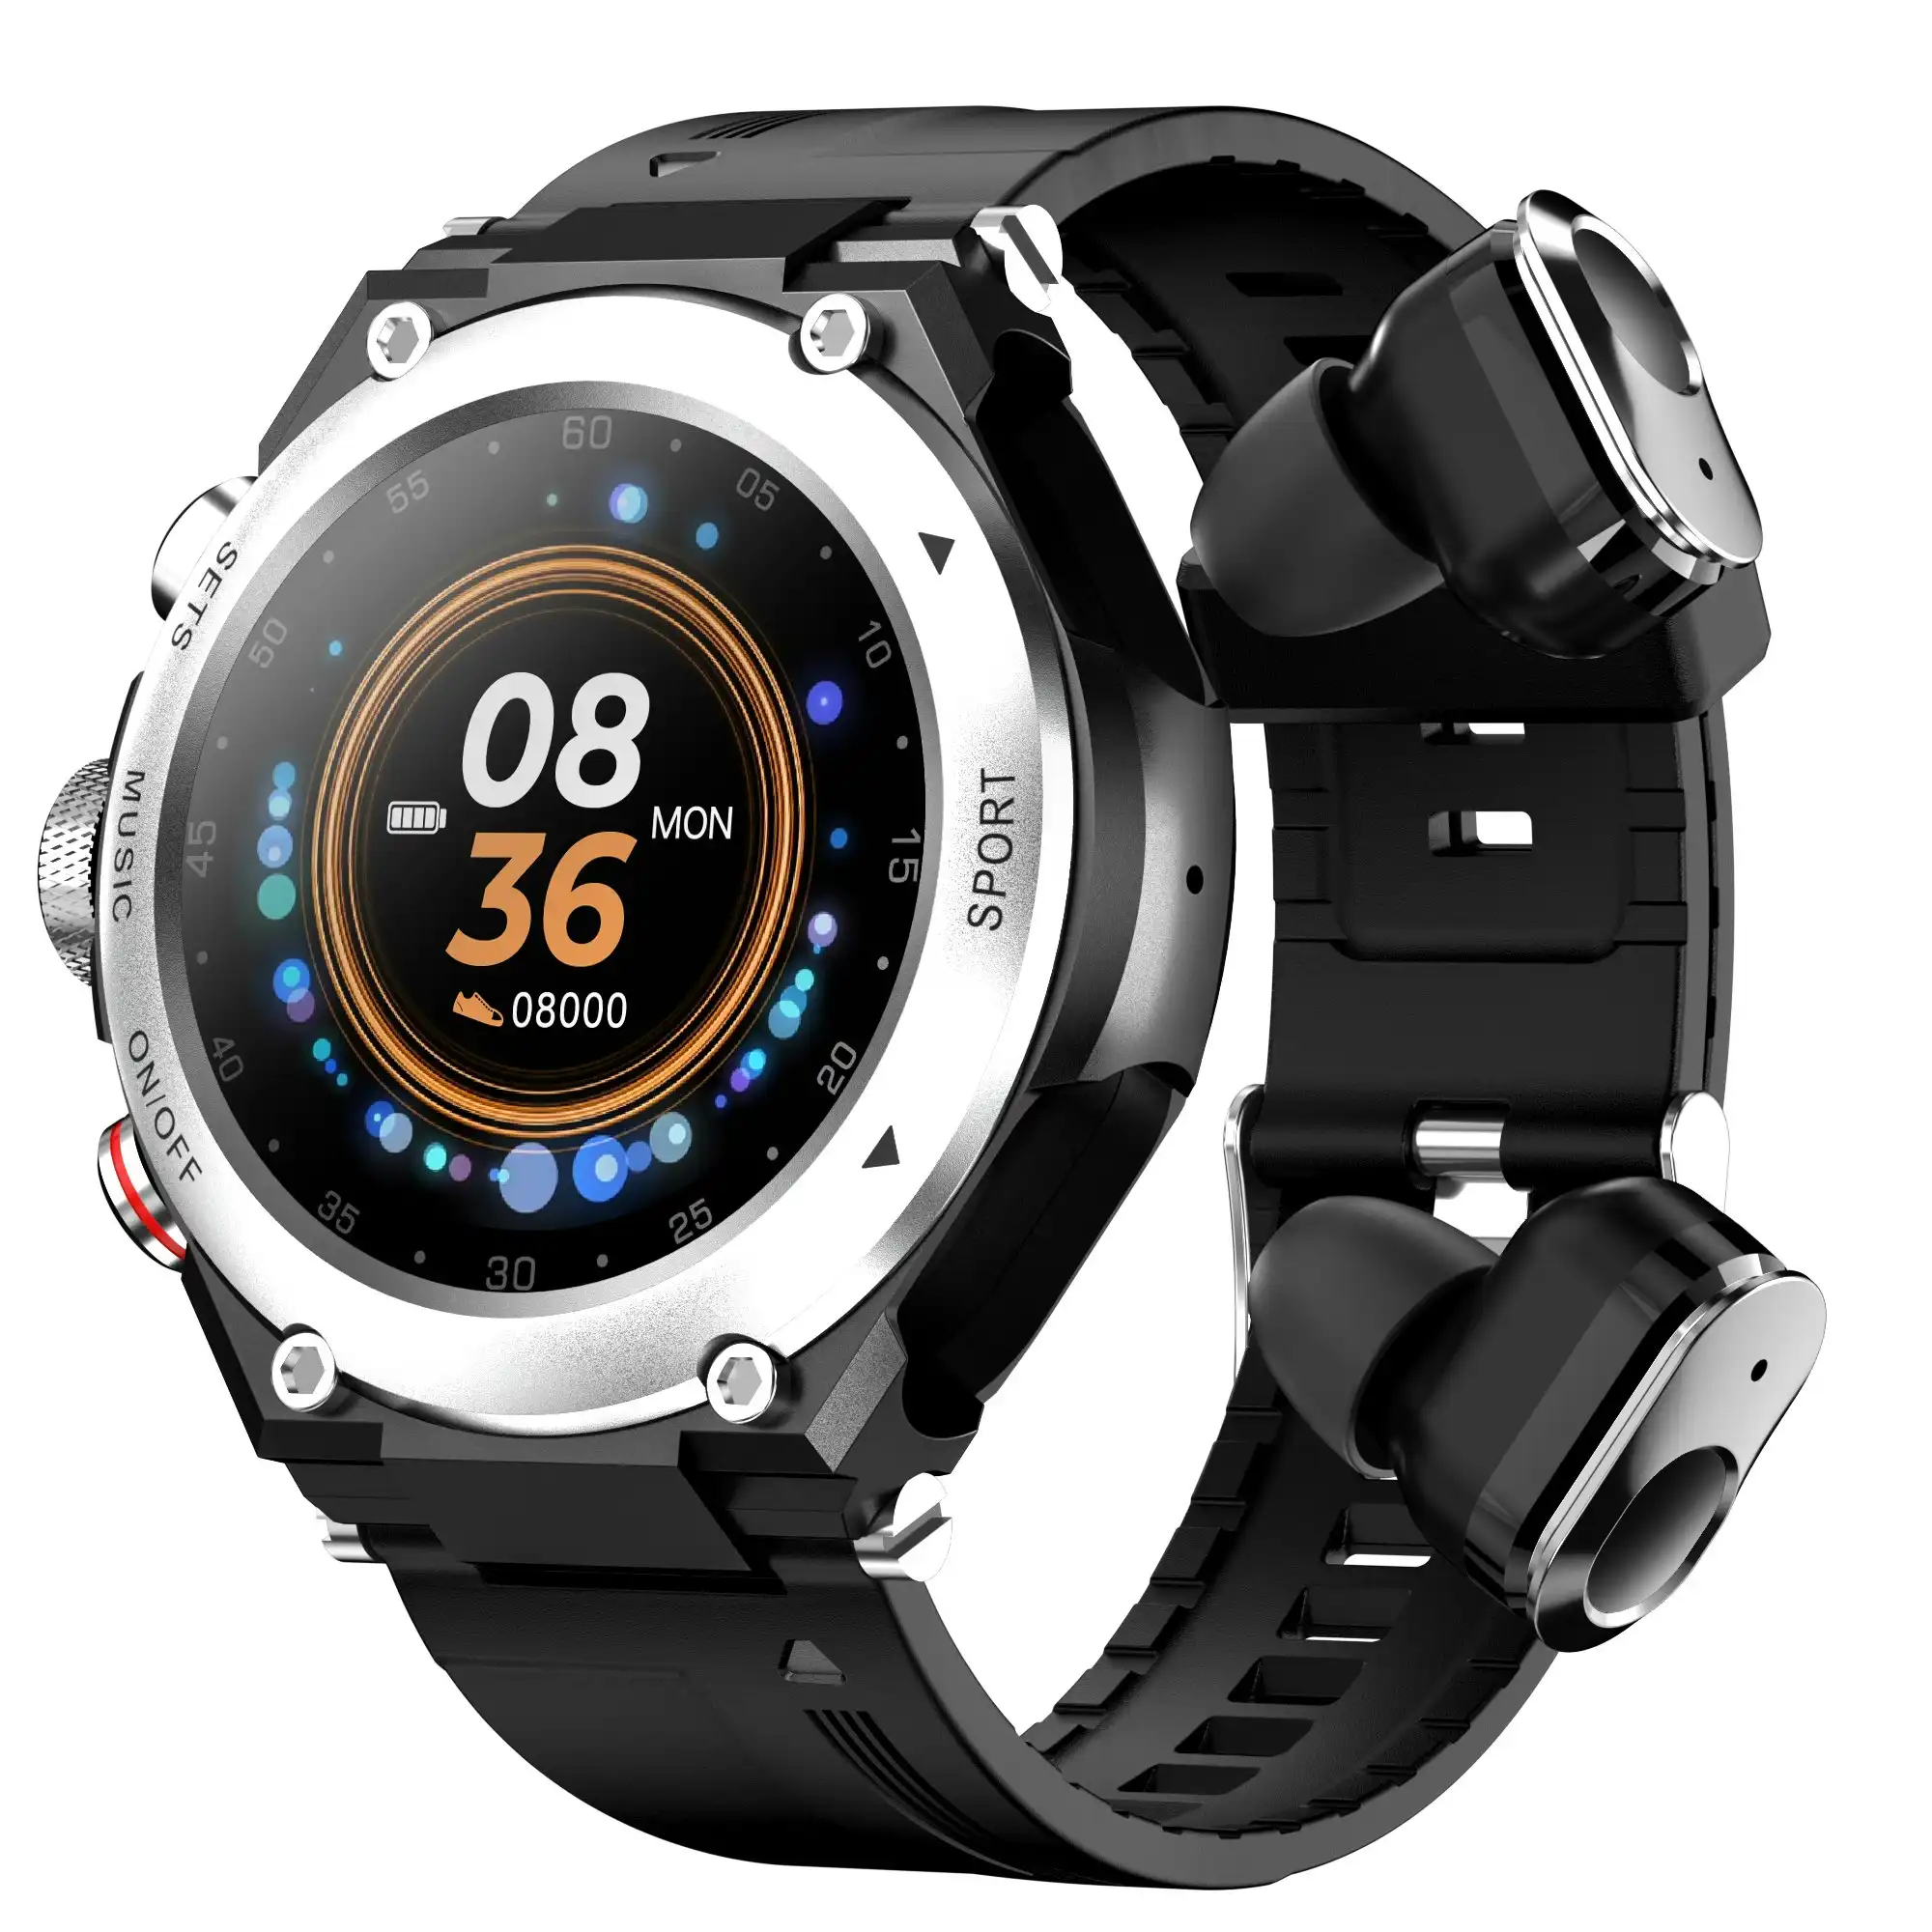 2 in 1 Bluetooth Smart Watch TWS Wireless Earphones 1.28" 9D Touch Screen BT 5.0 - Silver Black